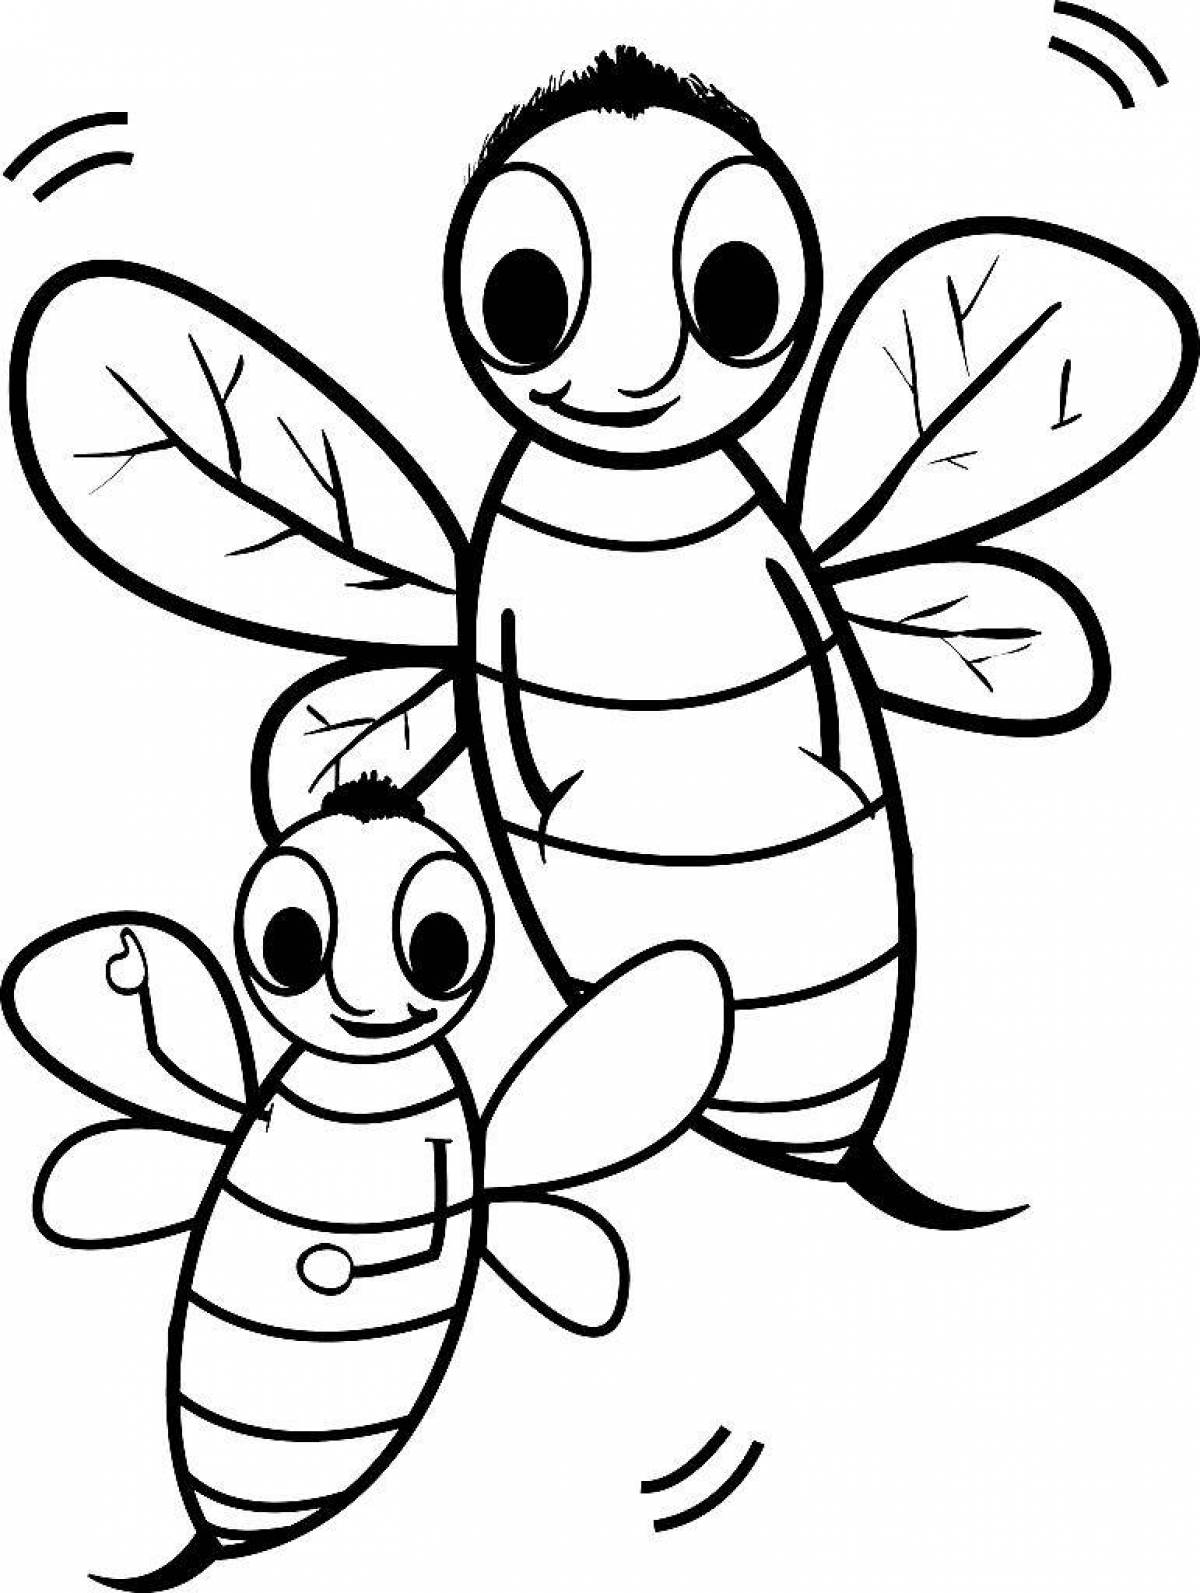 Яркая пчелка-раскраска для детей 3-4 лет